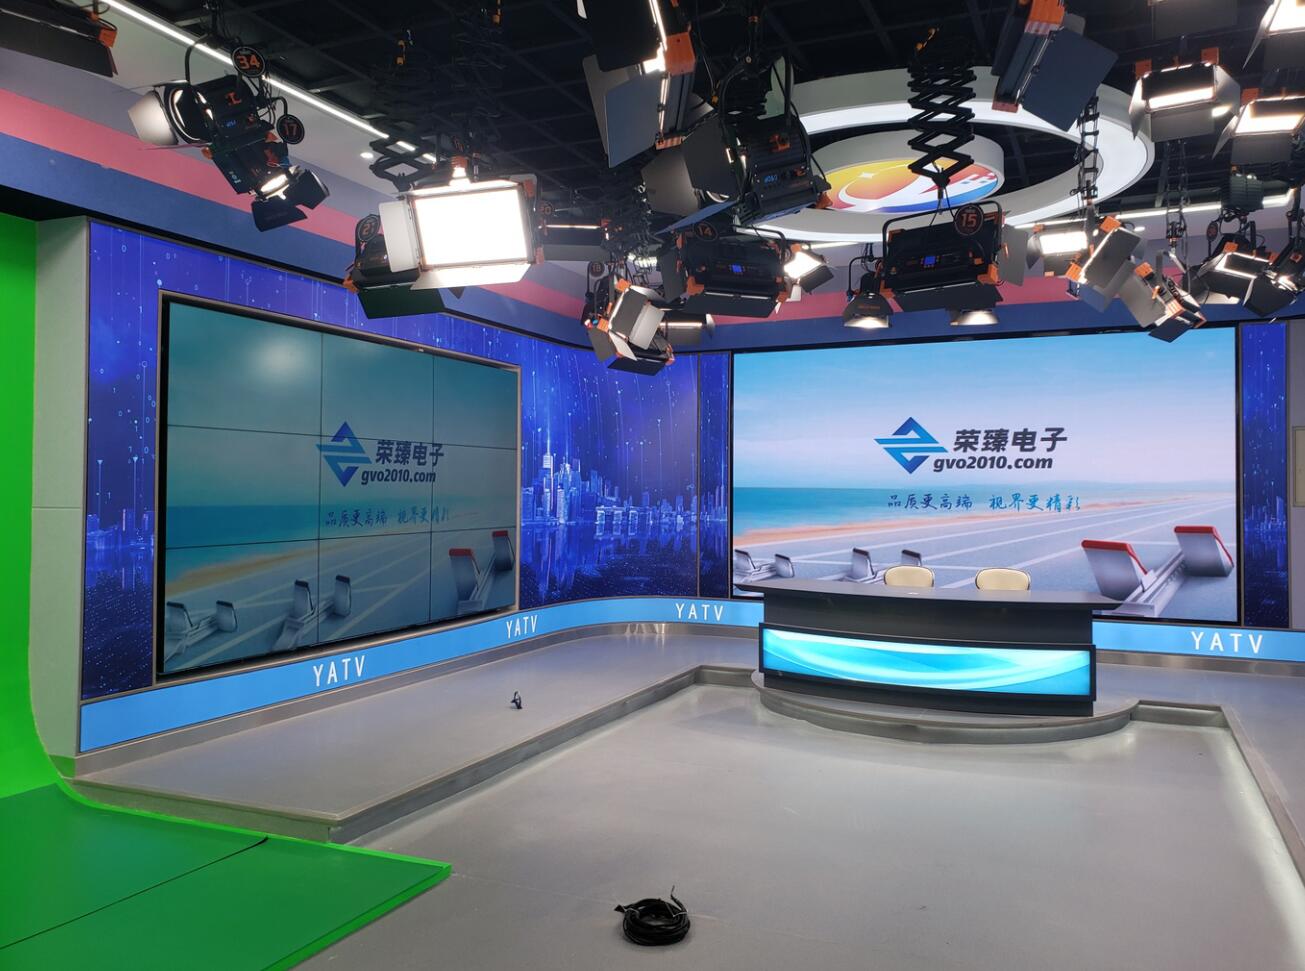 安徽义安区融媒体中心显示屏建设完成